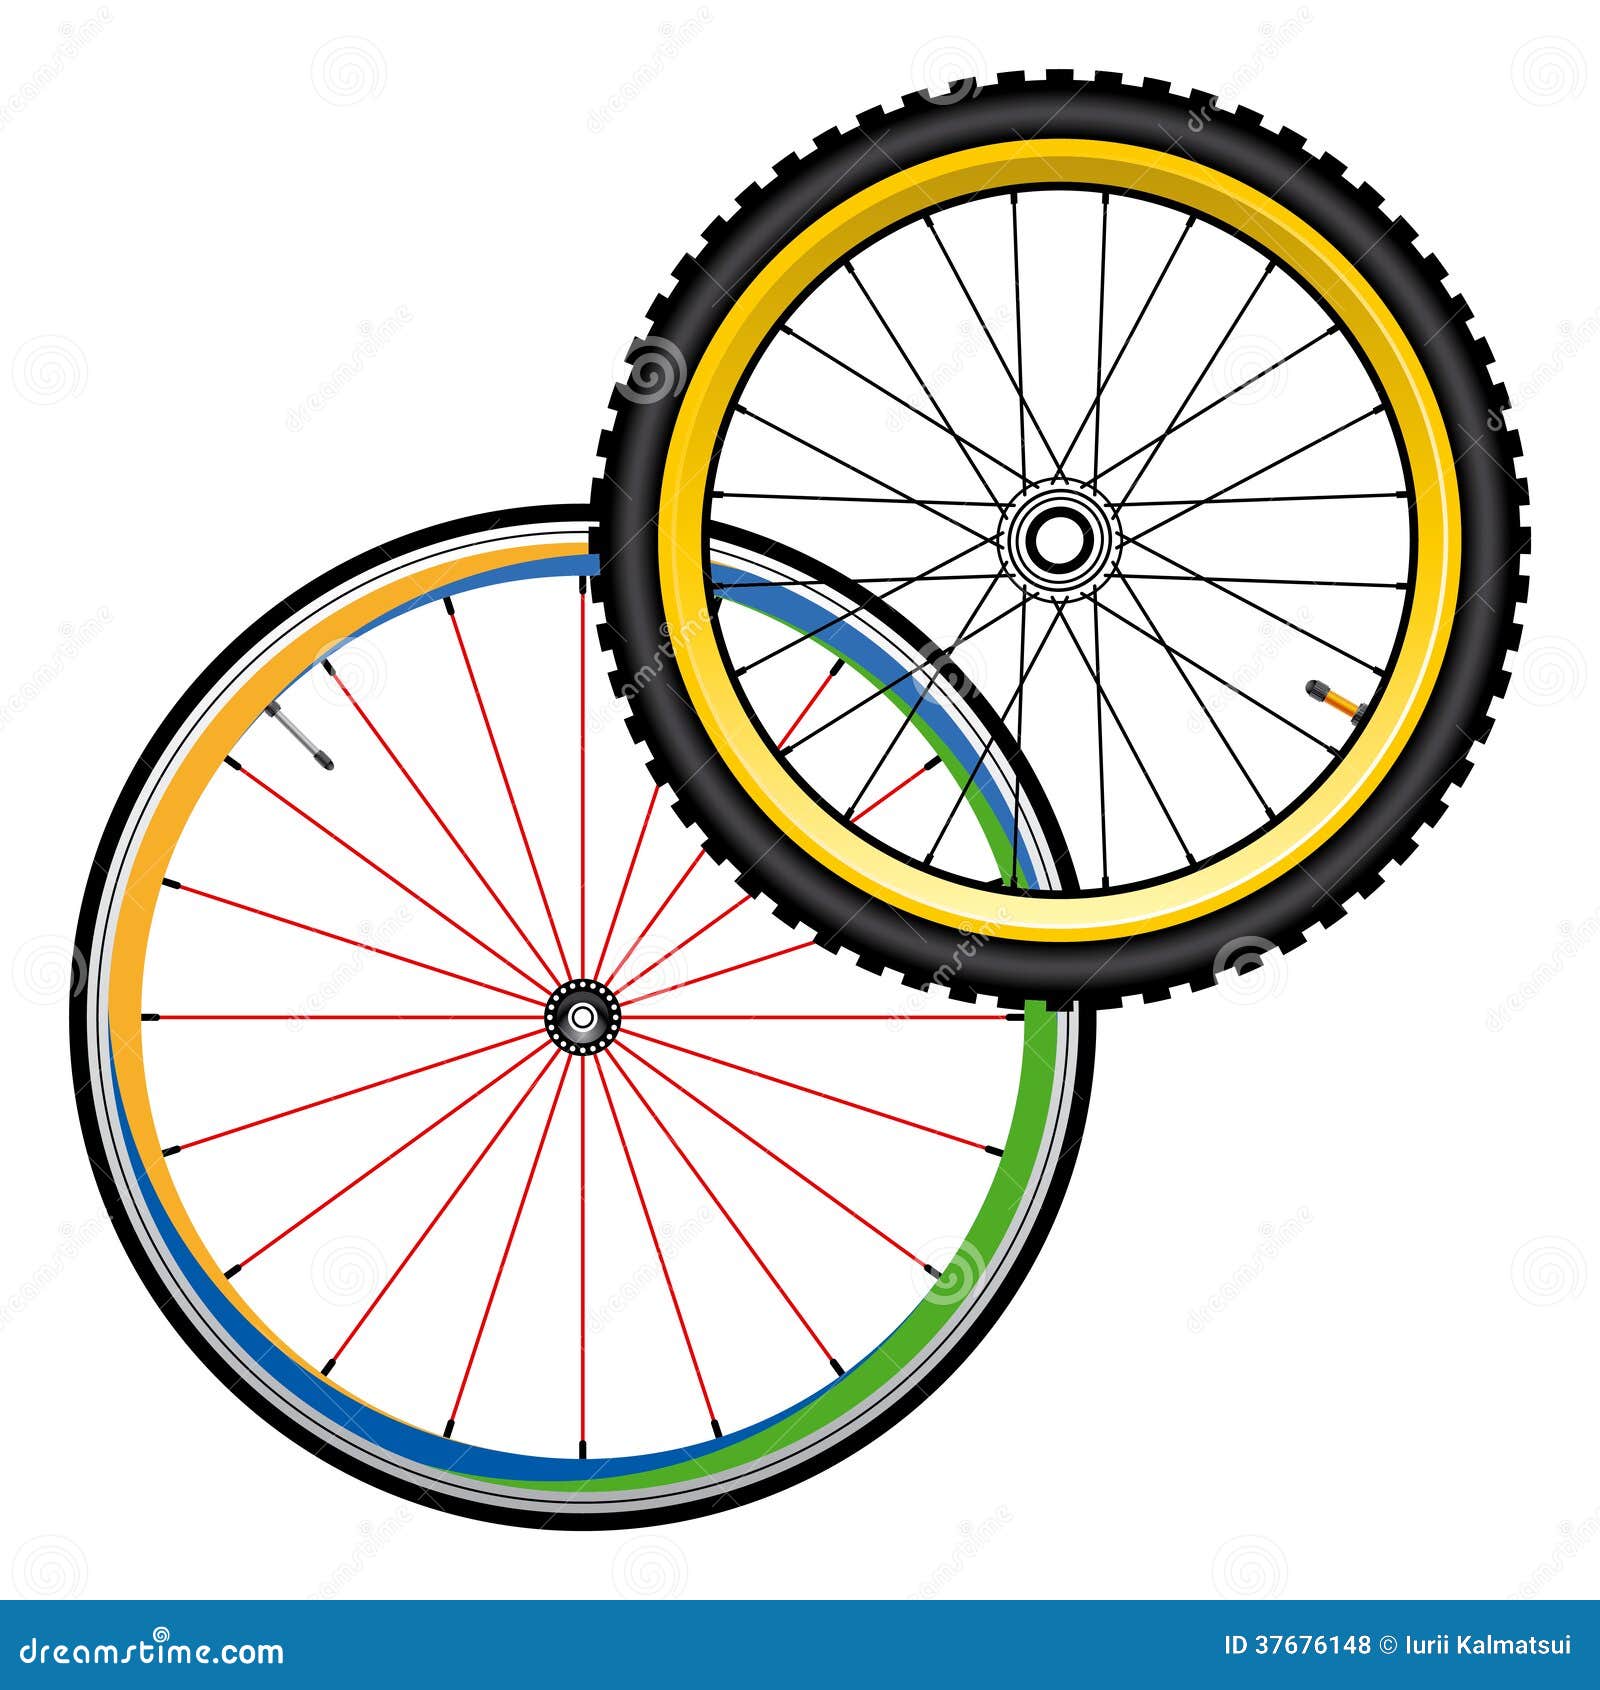 Колесо велосипед рисунок. Колесо велосипеда иллюстрация. Велосипедное колесо вектор. Колесо велосипеда рисунок. Колесо велосипеда нарисованное.